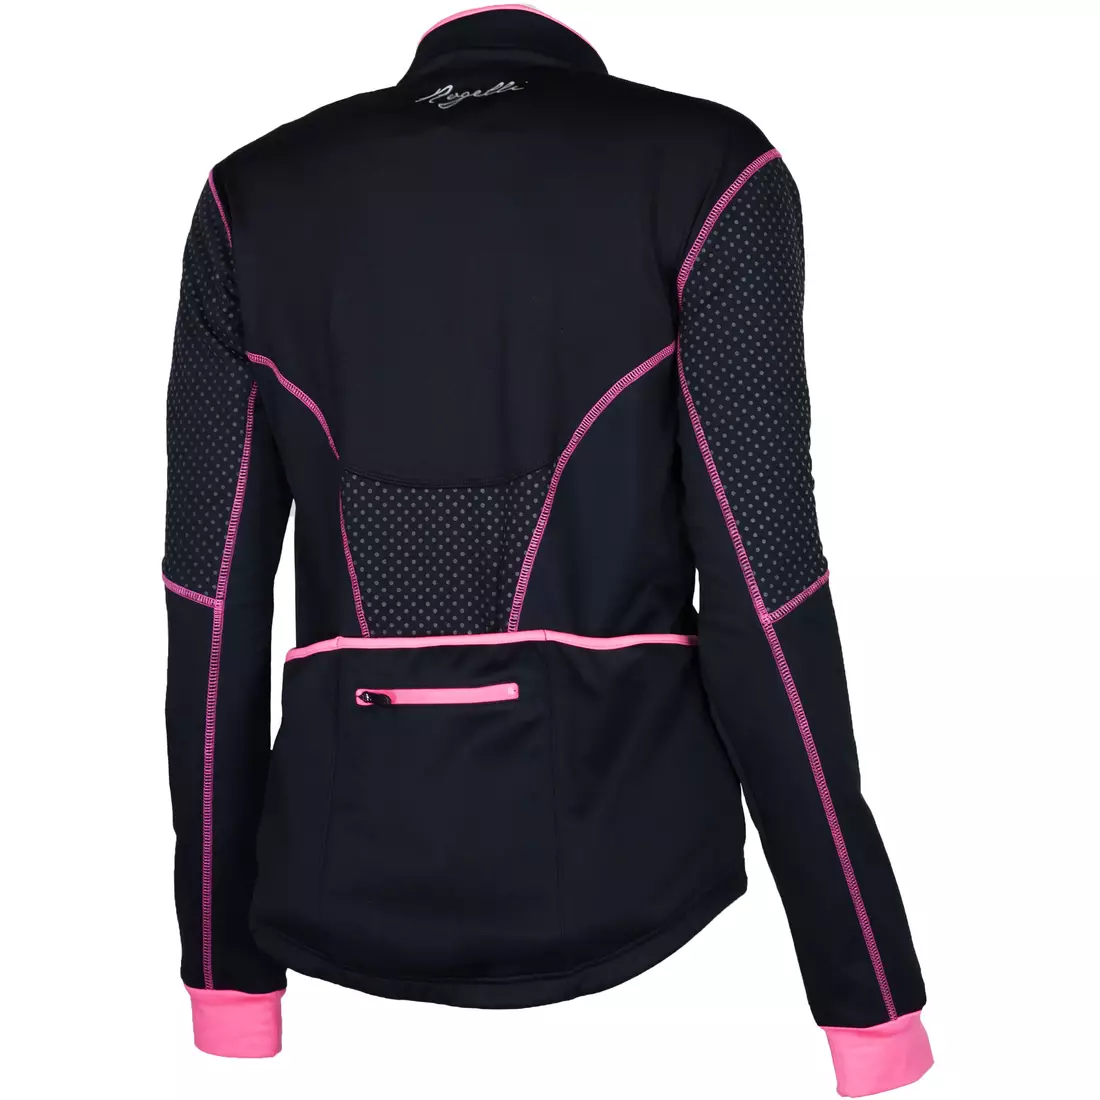 ROGELLI CAMILLA dámská zimní softshellová cyklistická bunda, černo-růžová 010.303